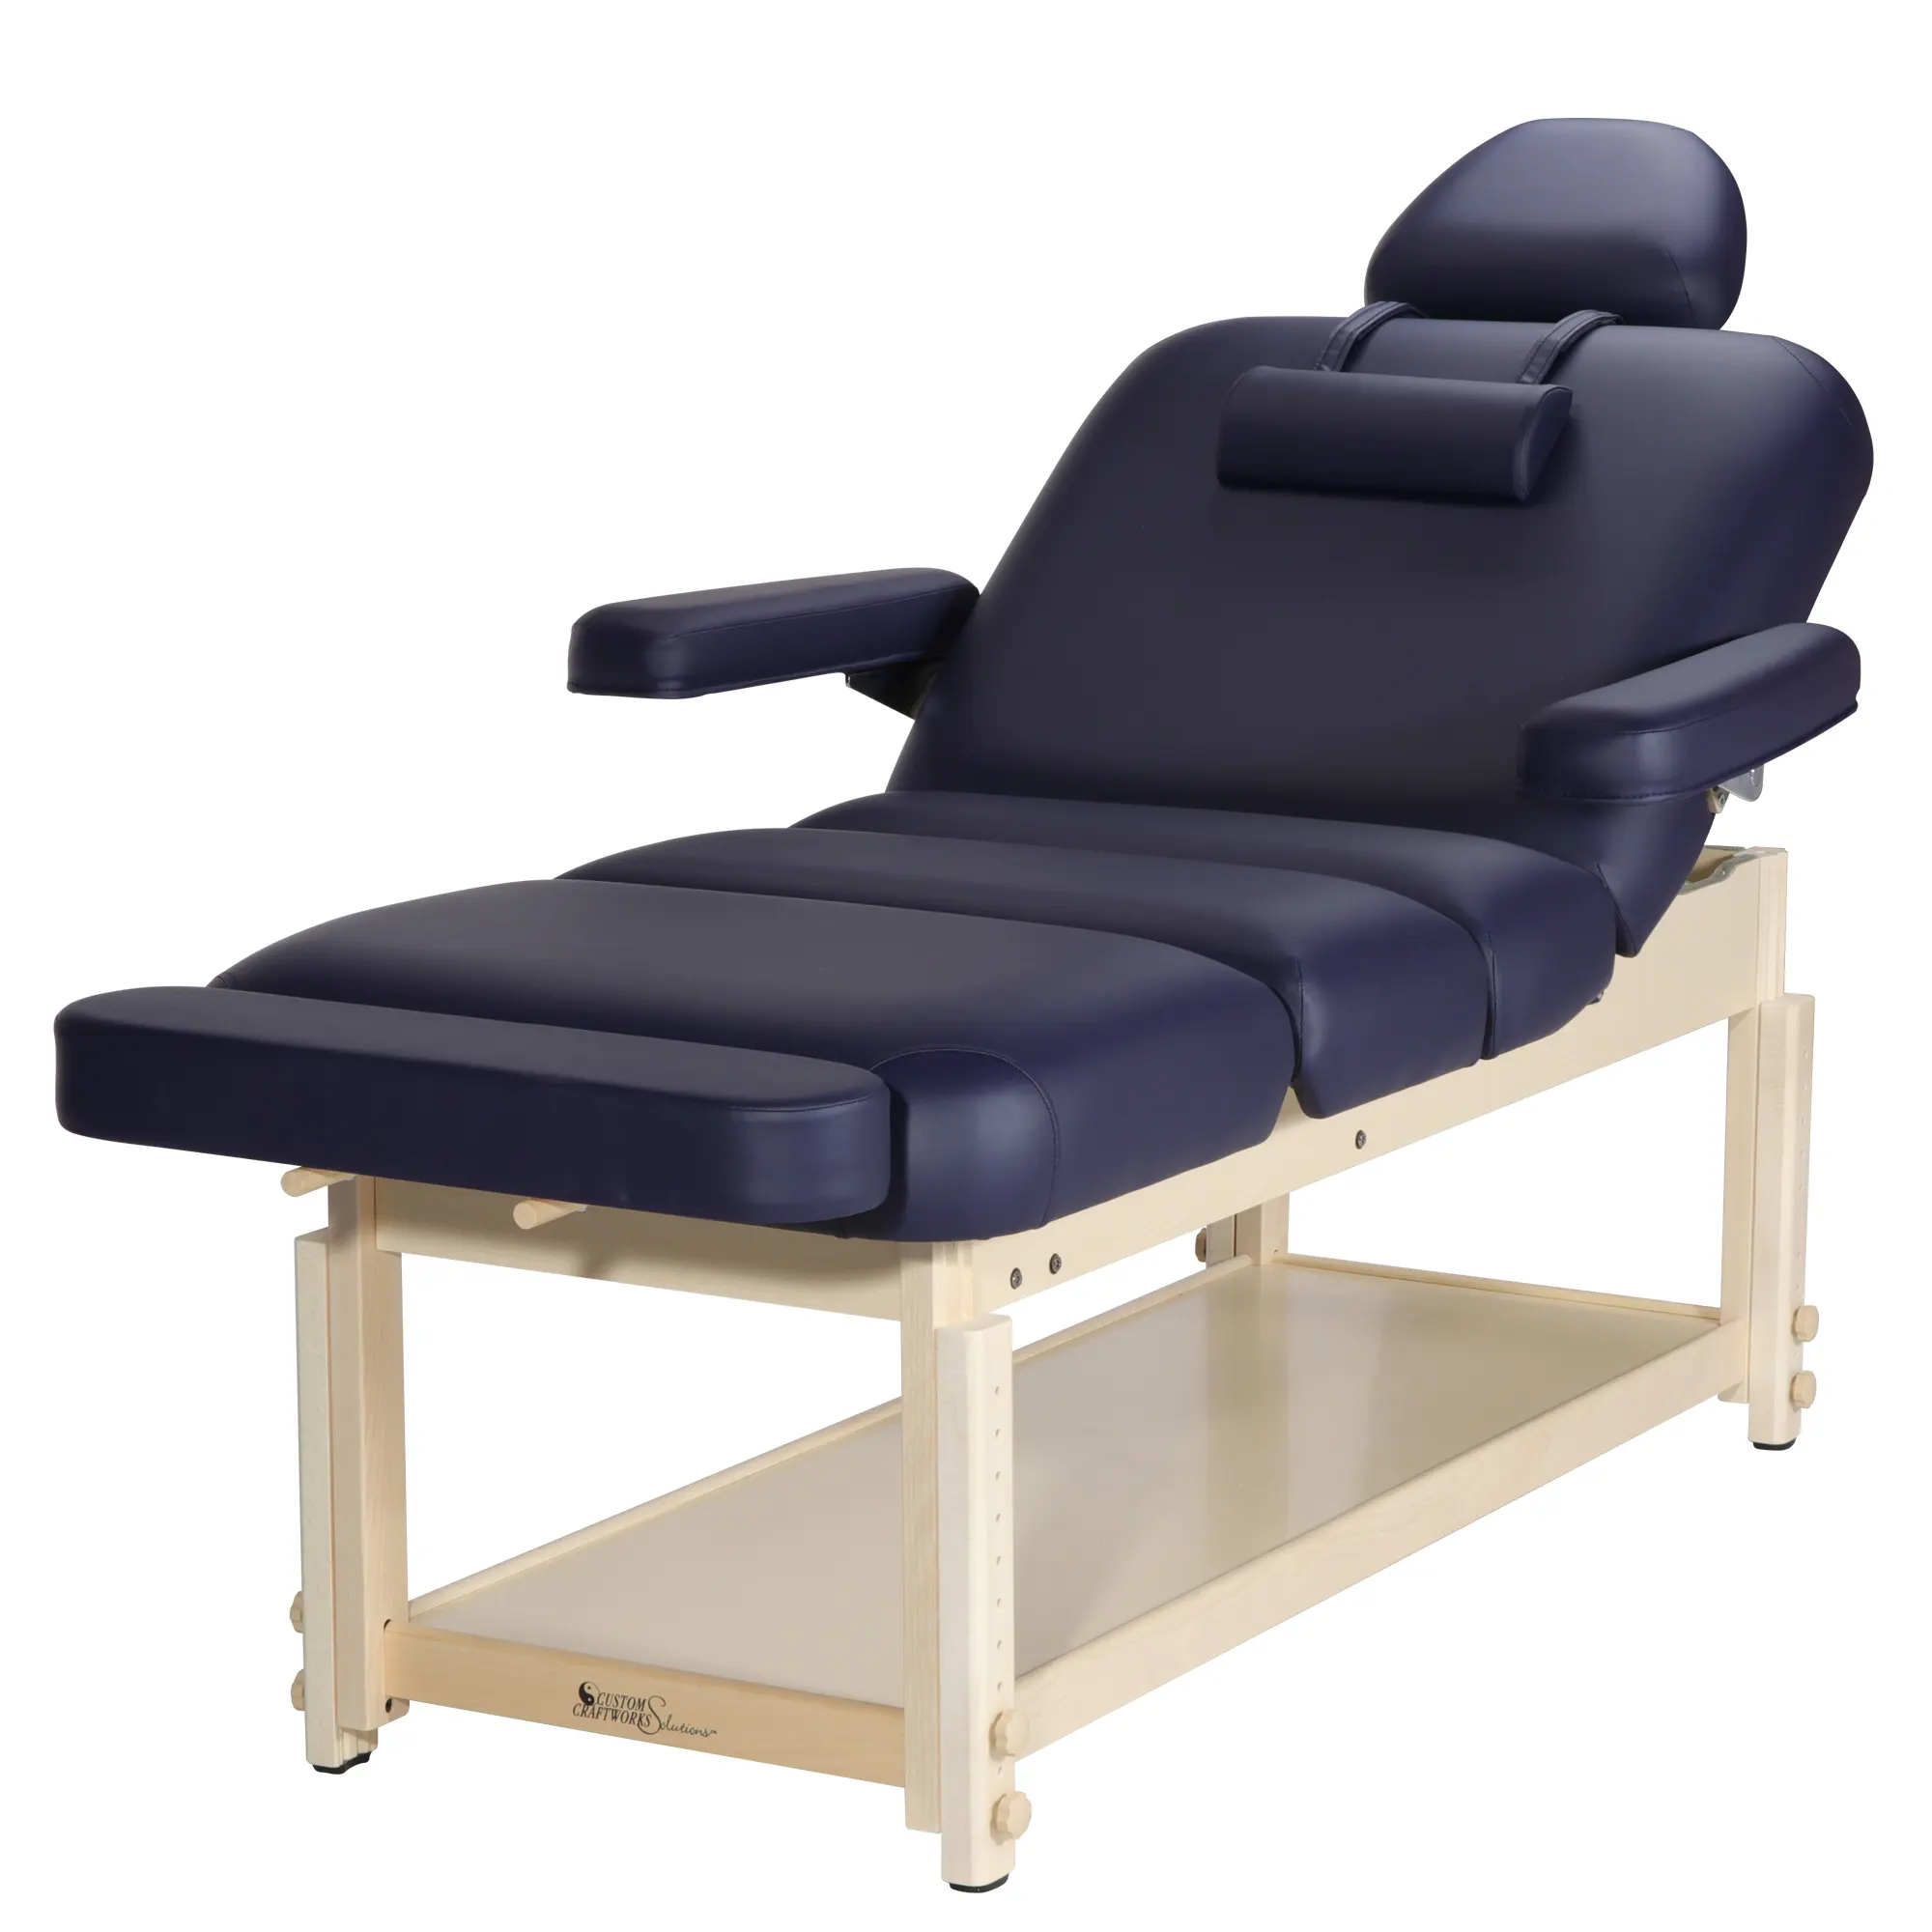 Archer-Deluxe Serie stationäre Luxus Holz Massage tisch Massage Couch Massage bett Preis Höhe verstellbares Schönheits bett